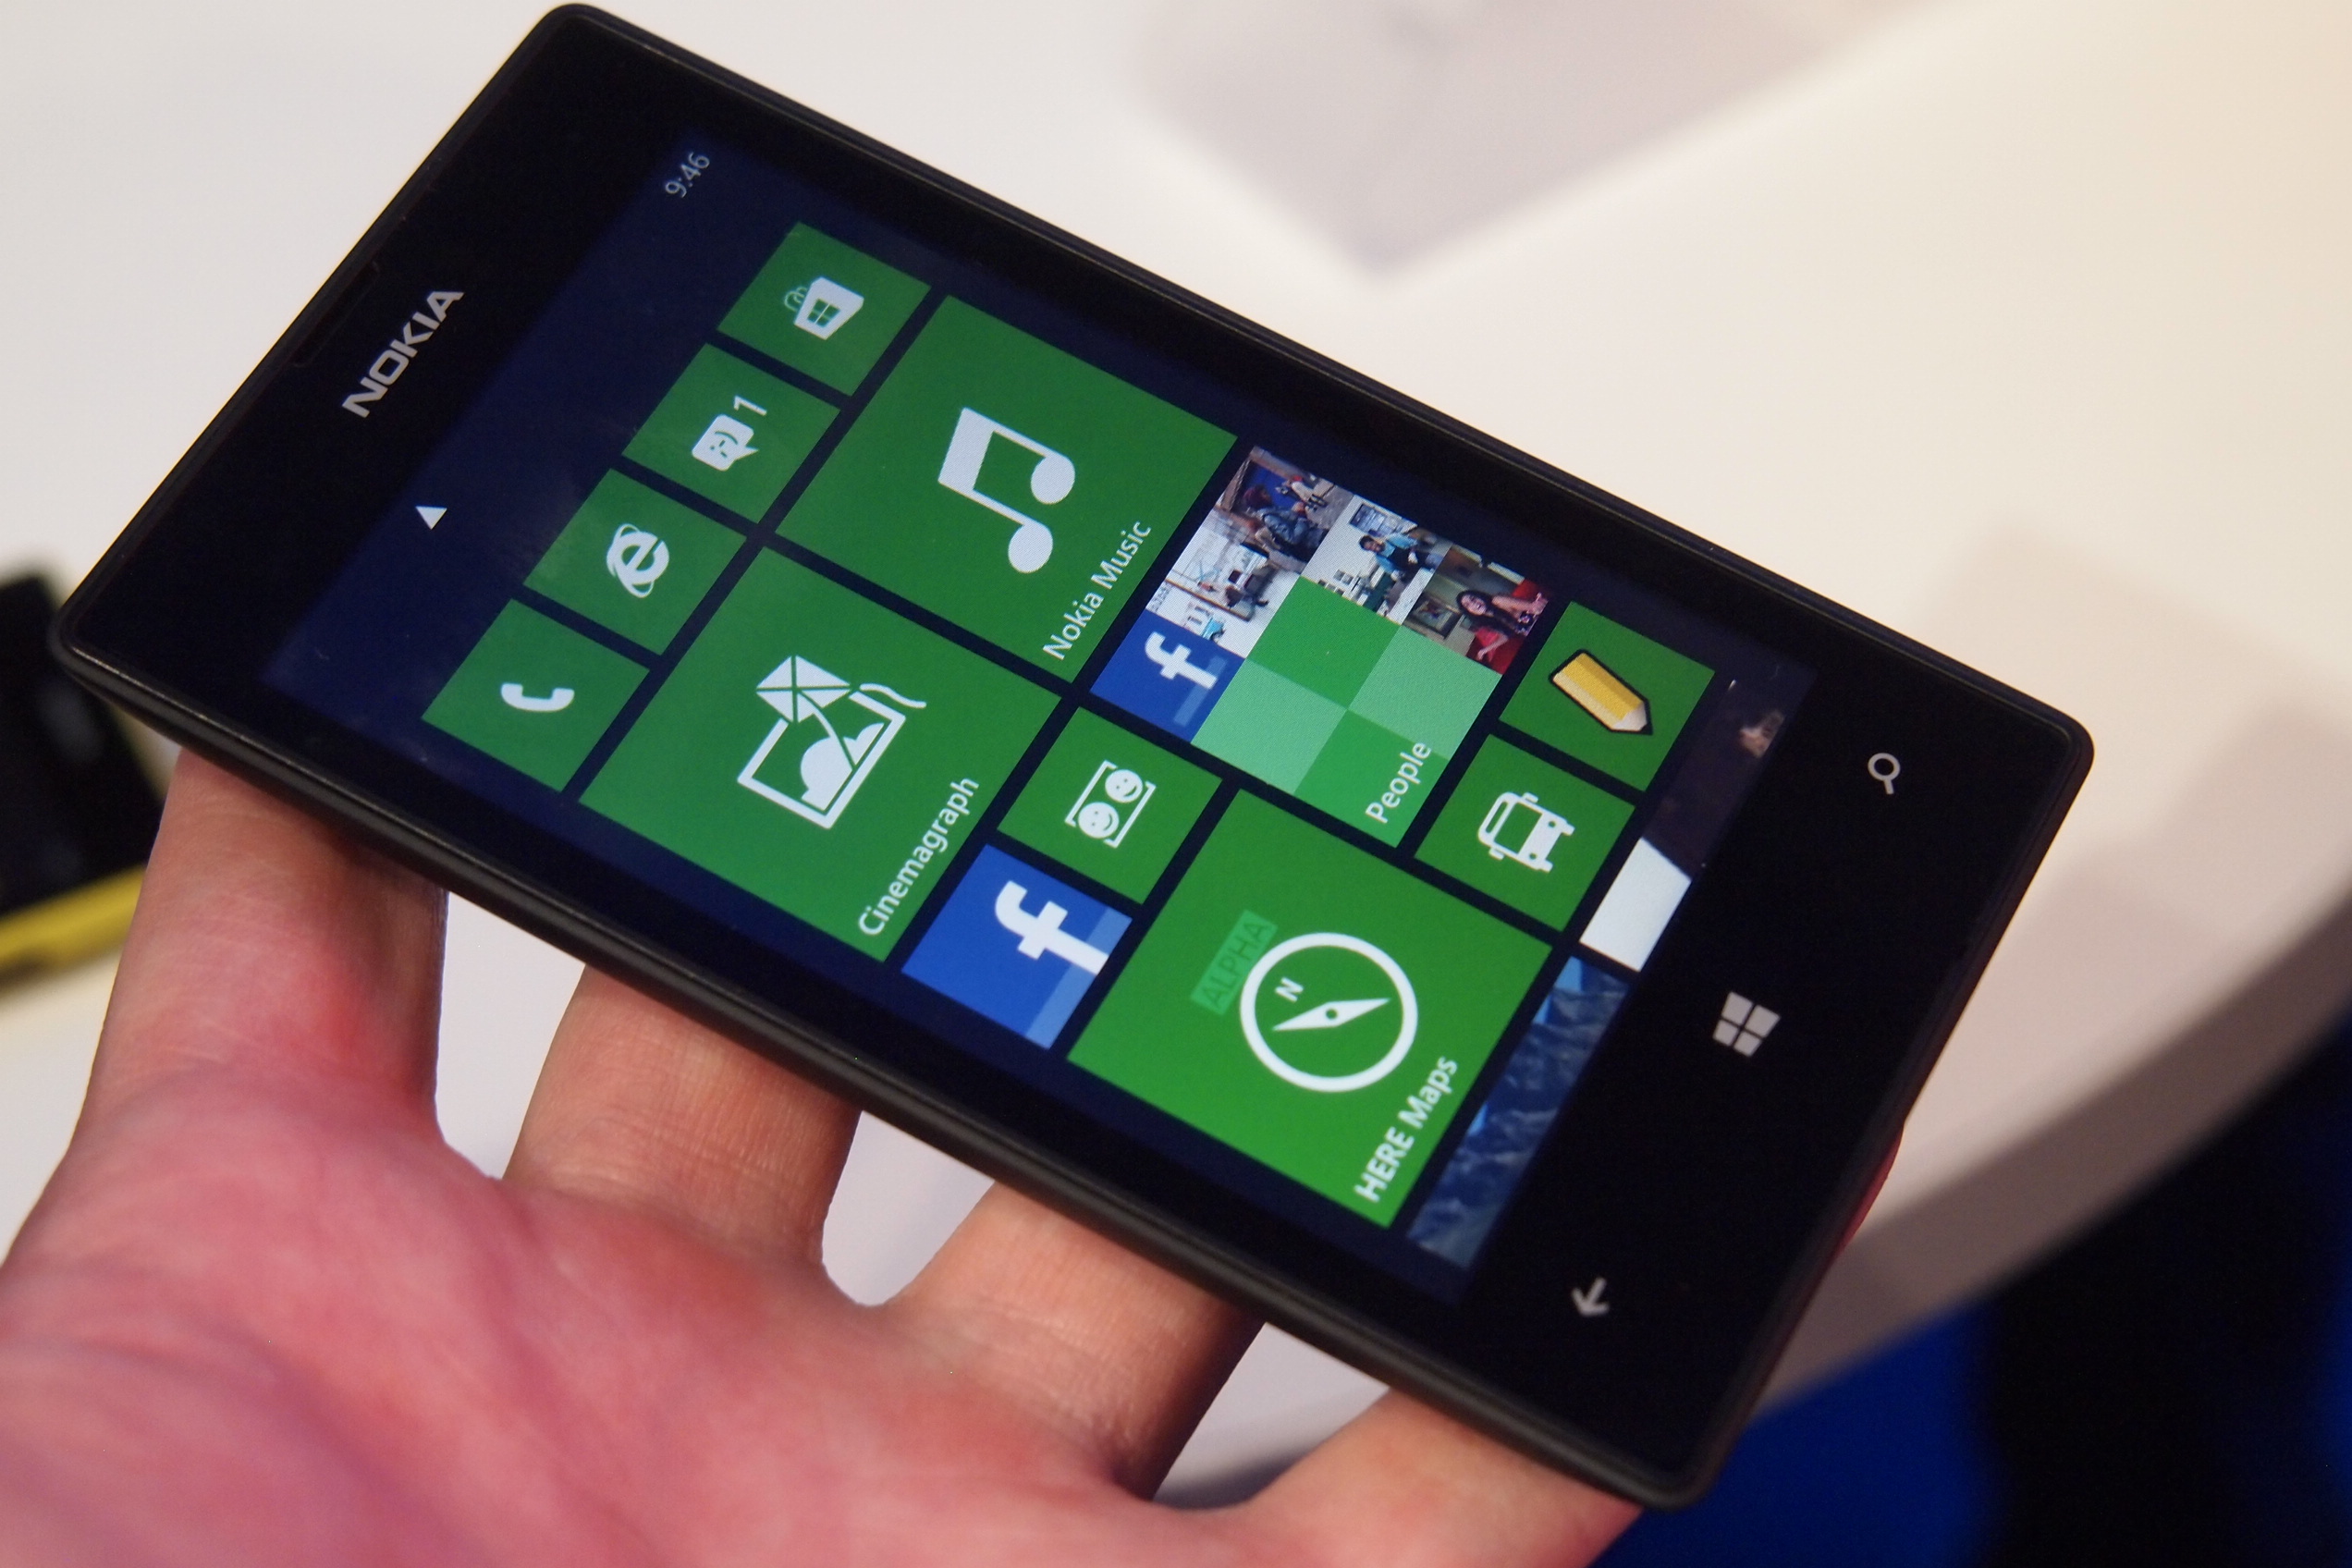 Nokia Lumia 520 e 620, migliori offerte, prezzi e sconti Amazon ed Euronics (marzo 2014)